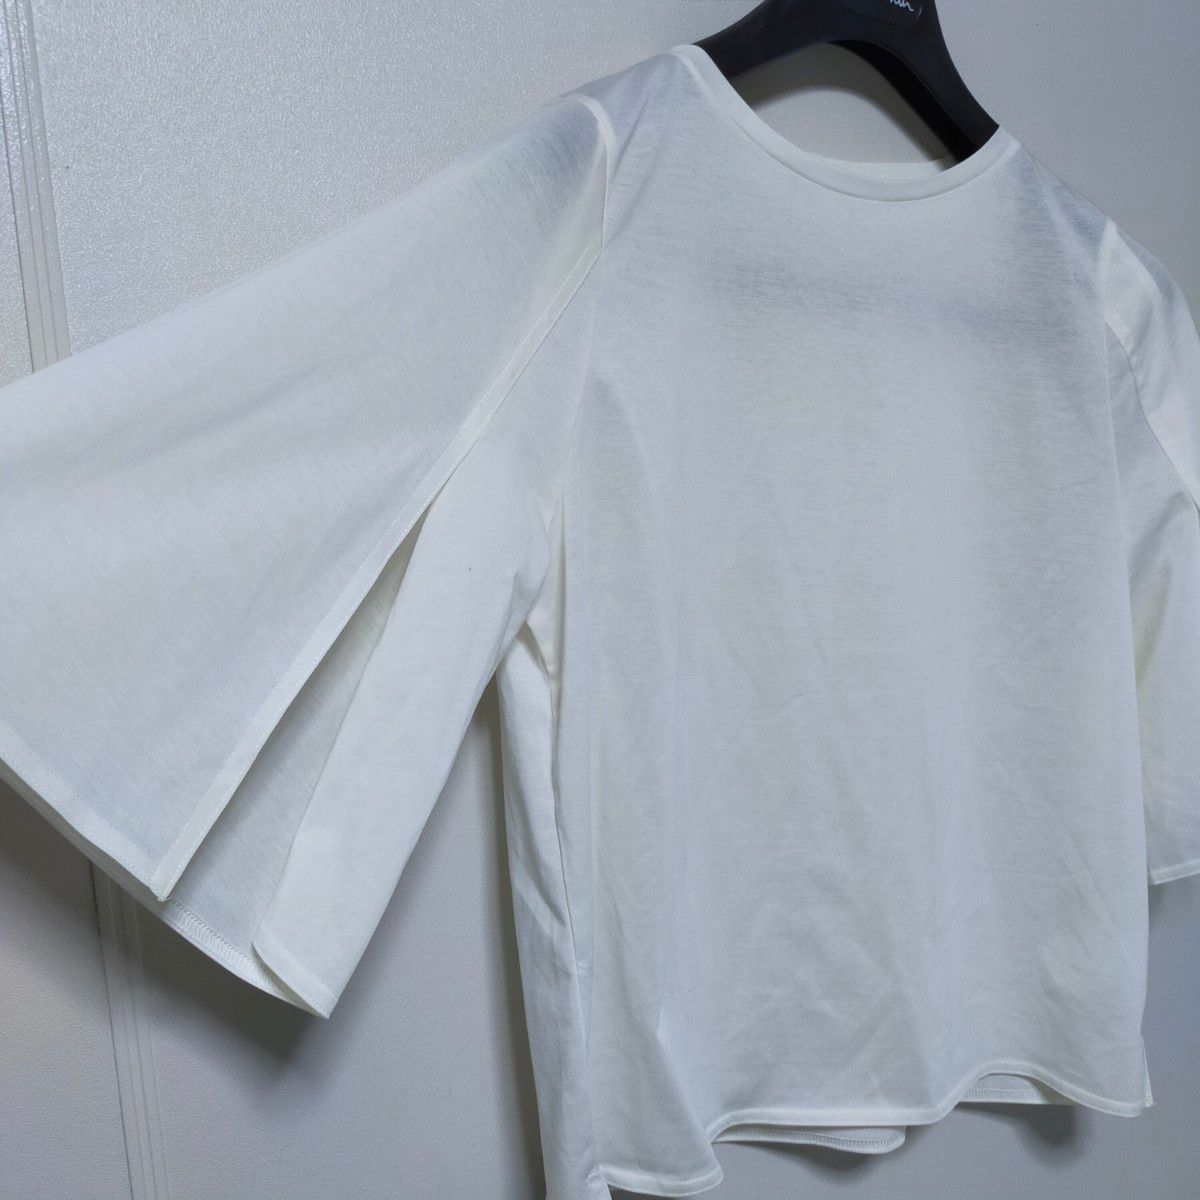 【極美品】BEAMSLIGHTS 白　五分袖　カットソー　トップス Tシャツ  プルオーバー クルーネック 半袖 コットン